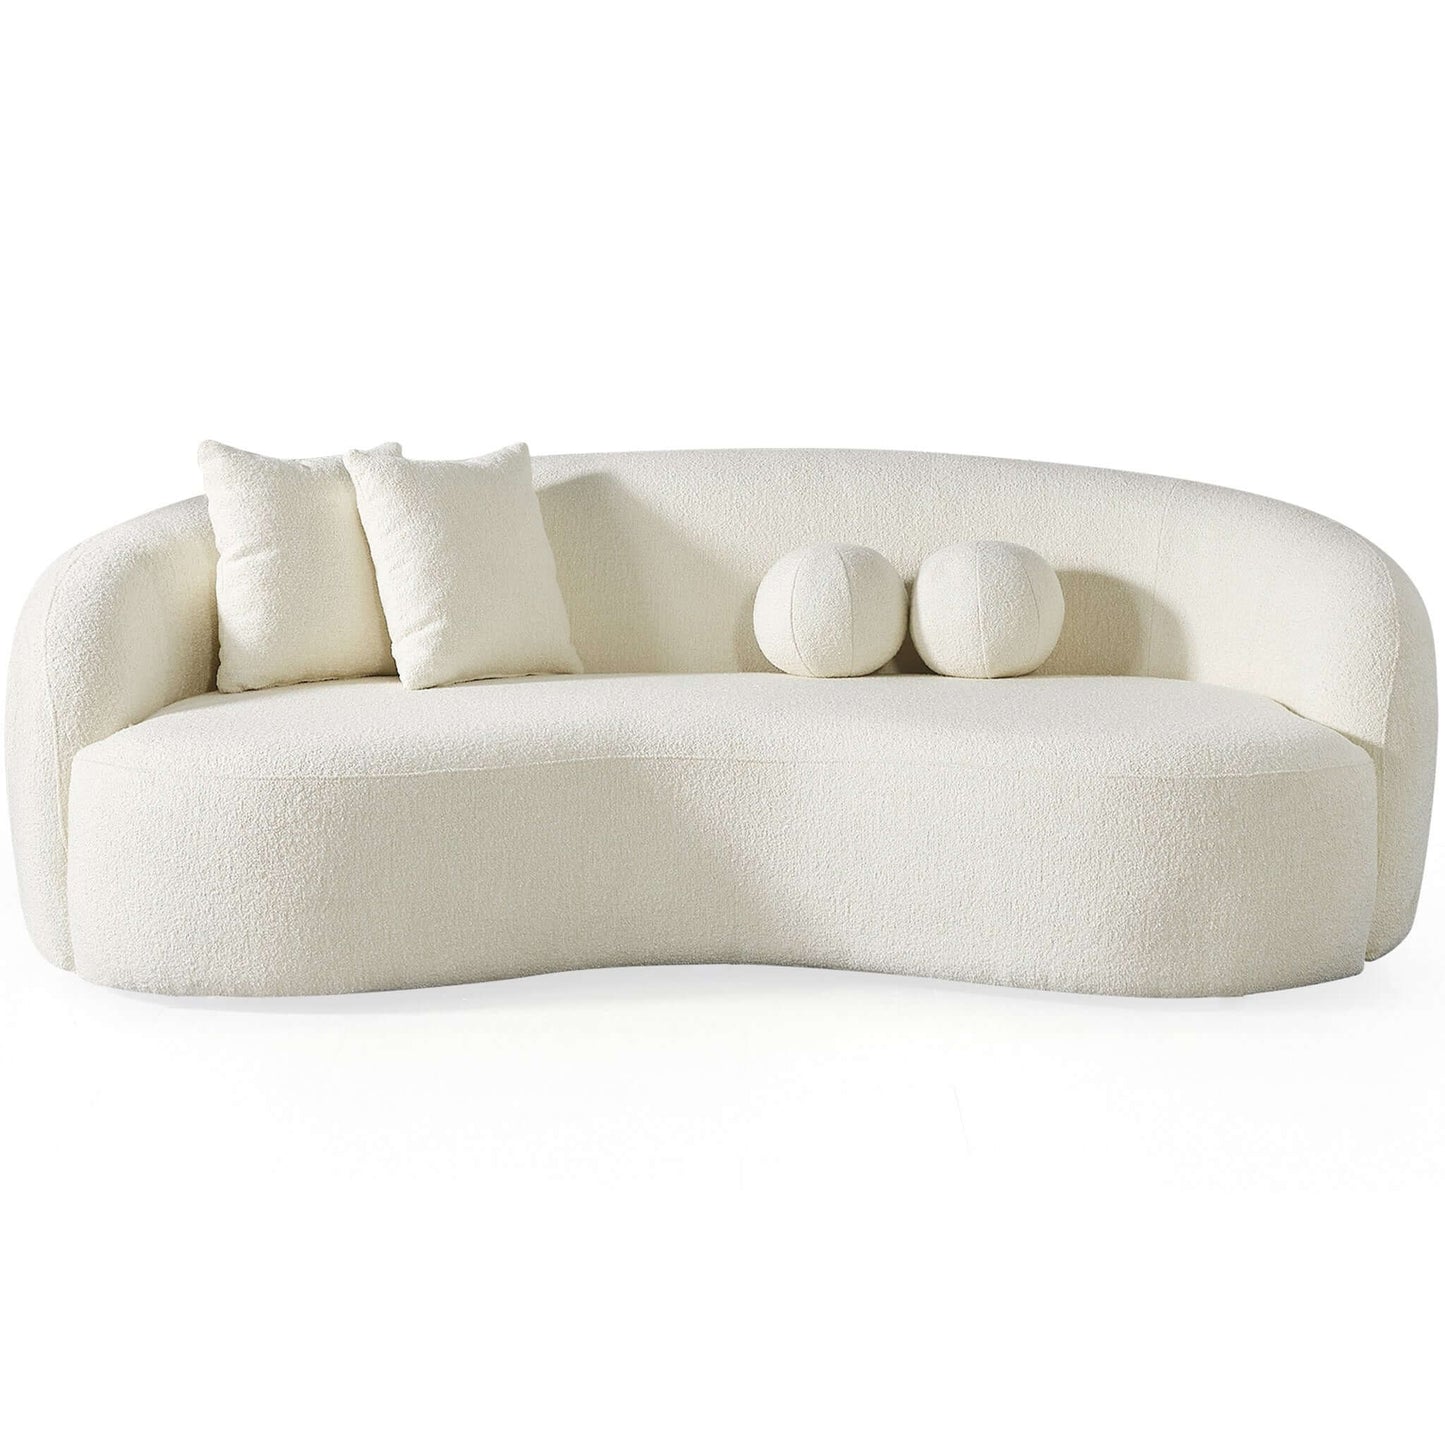 Ashcroft Furniture Co Sofas Ivory Drake Japandi Style Curvy Boucle Sofa